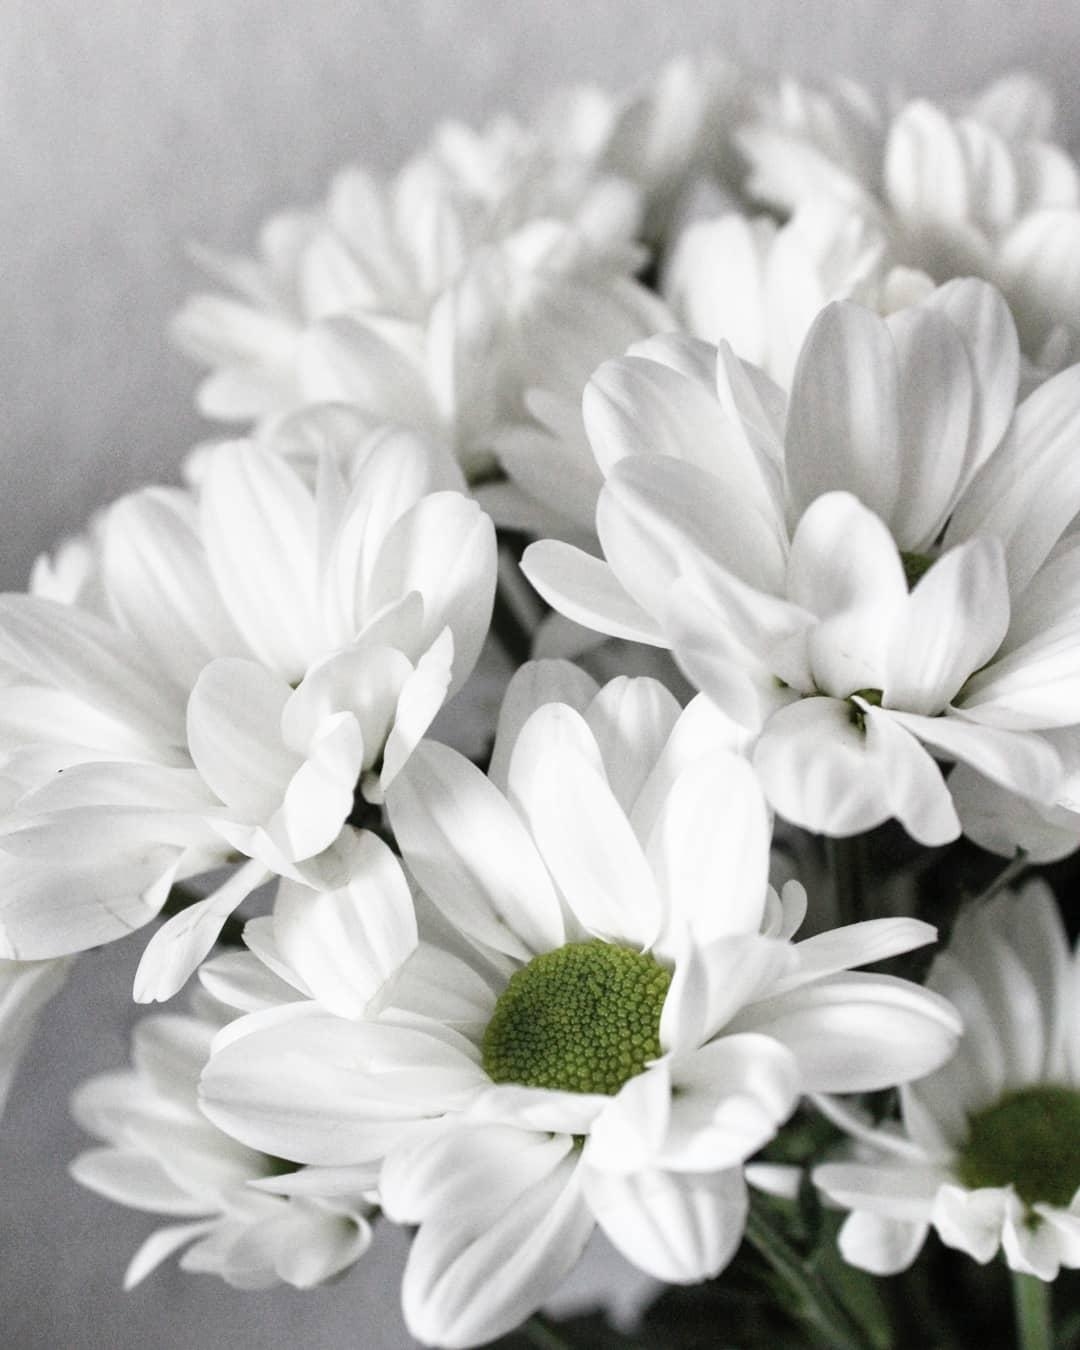 Flowerpower ♡
#blumen #flowers #minimalism 